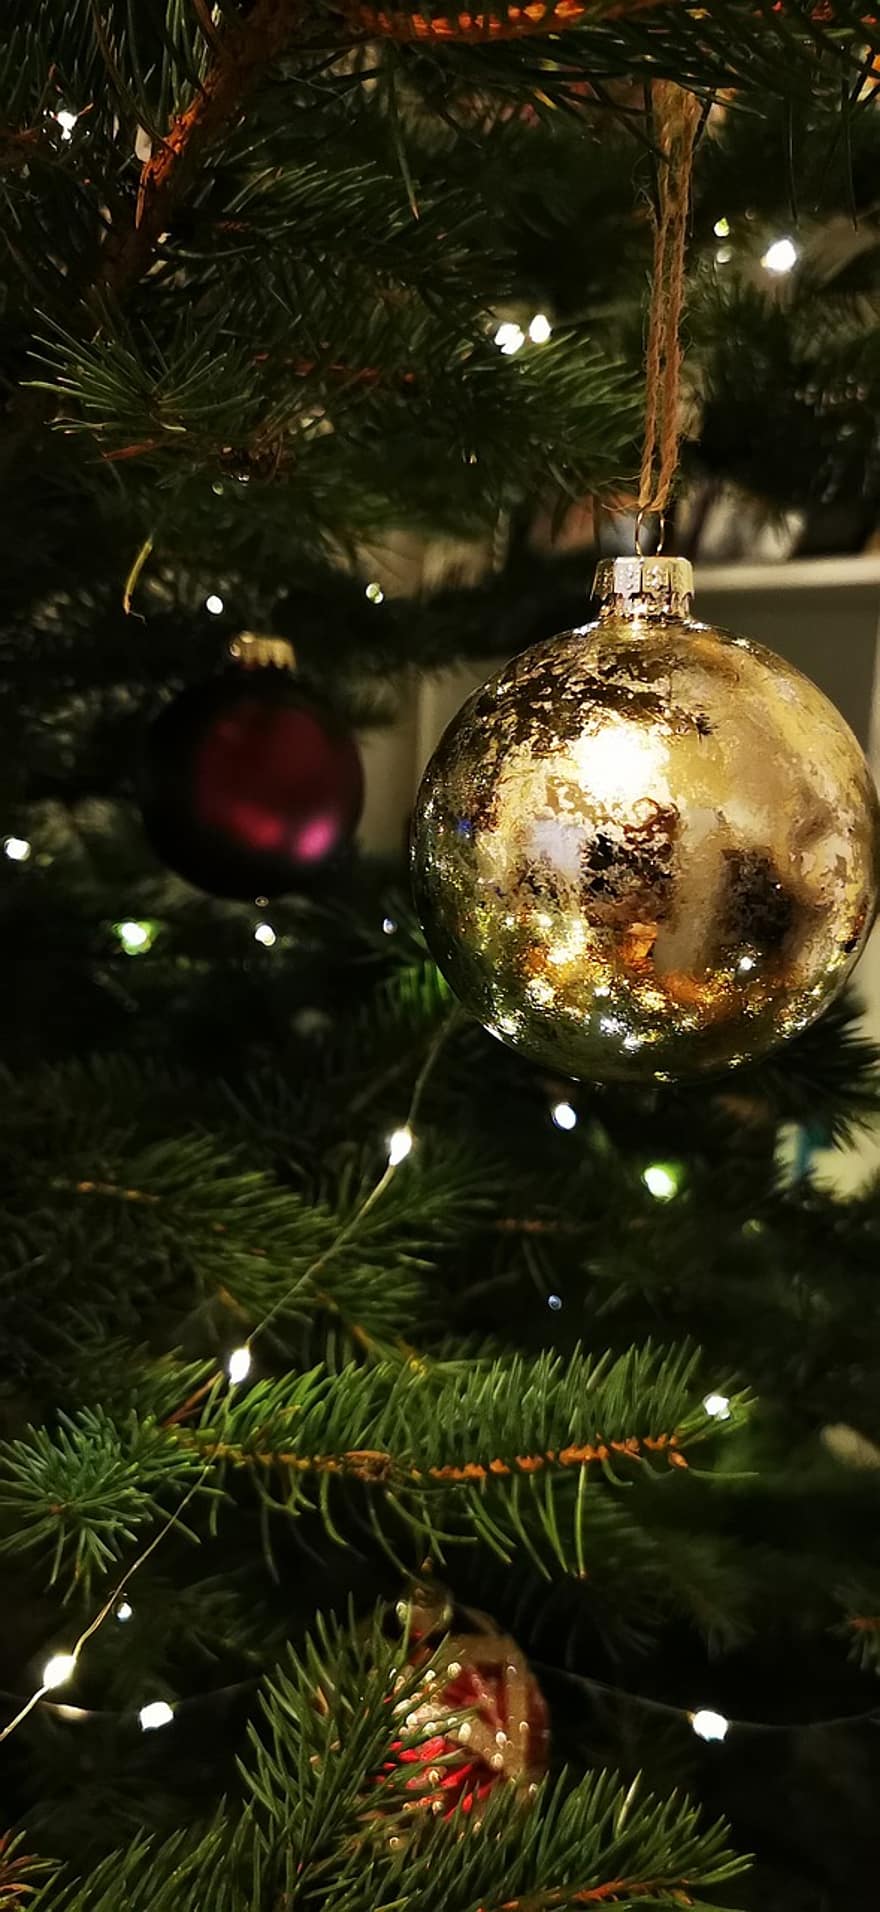 क्रिसमस के आभूषण, क्रिसमस वृक्ष, क्रिसमस, देवदार के पेड़, क्रिसमस बॉल, क्रिसमस रोशनी, दूधिया रोशनी, क्रिसमस बाउल, क्रिसमस की सजावट, आभूषण, छोटी बात